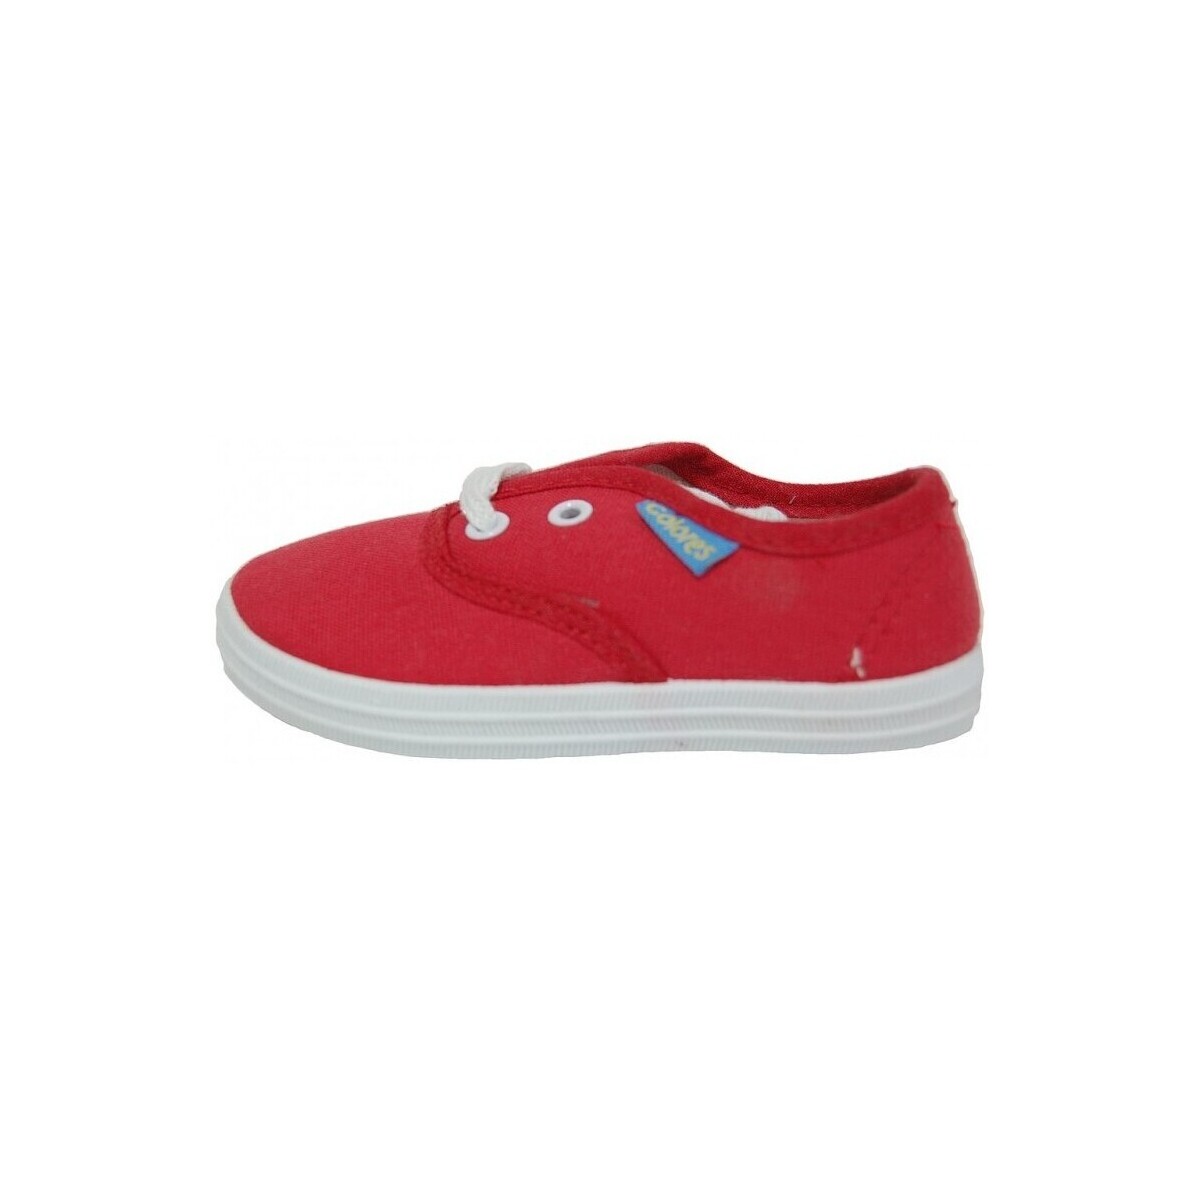 Scarpe Unisex bambino Sneakers Colores 10622-18 Rosso